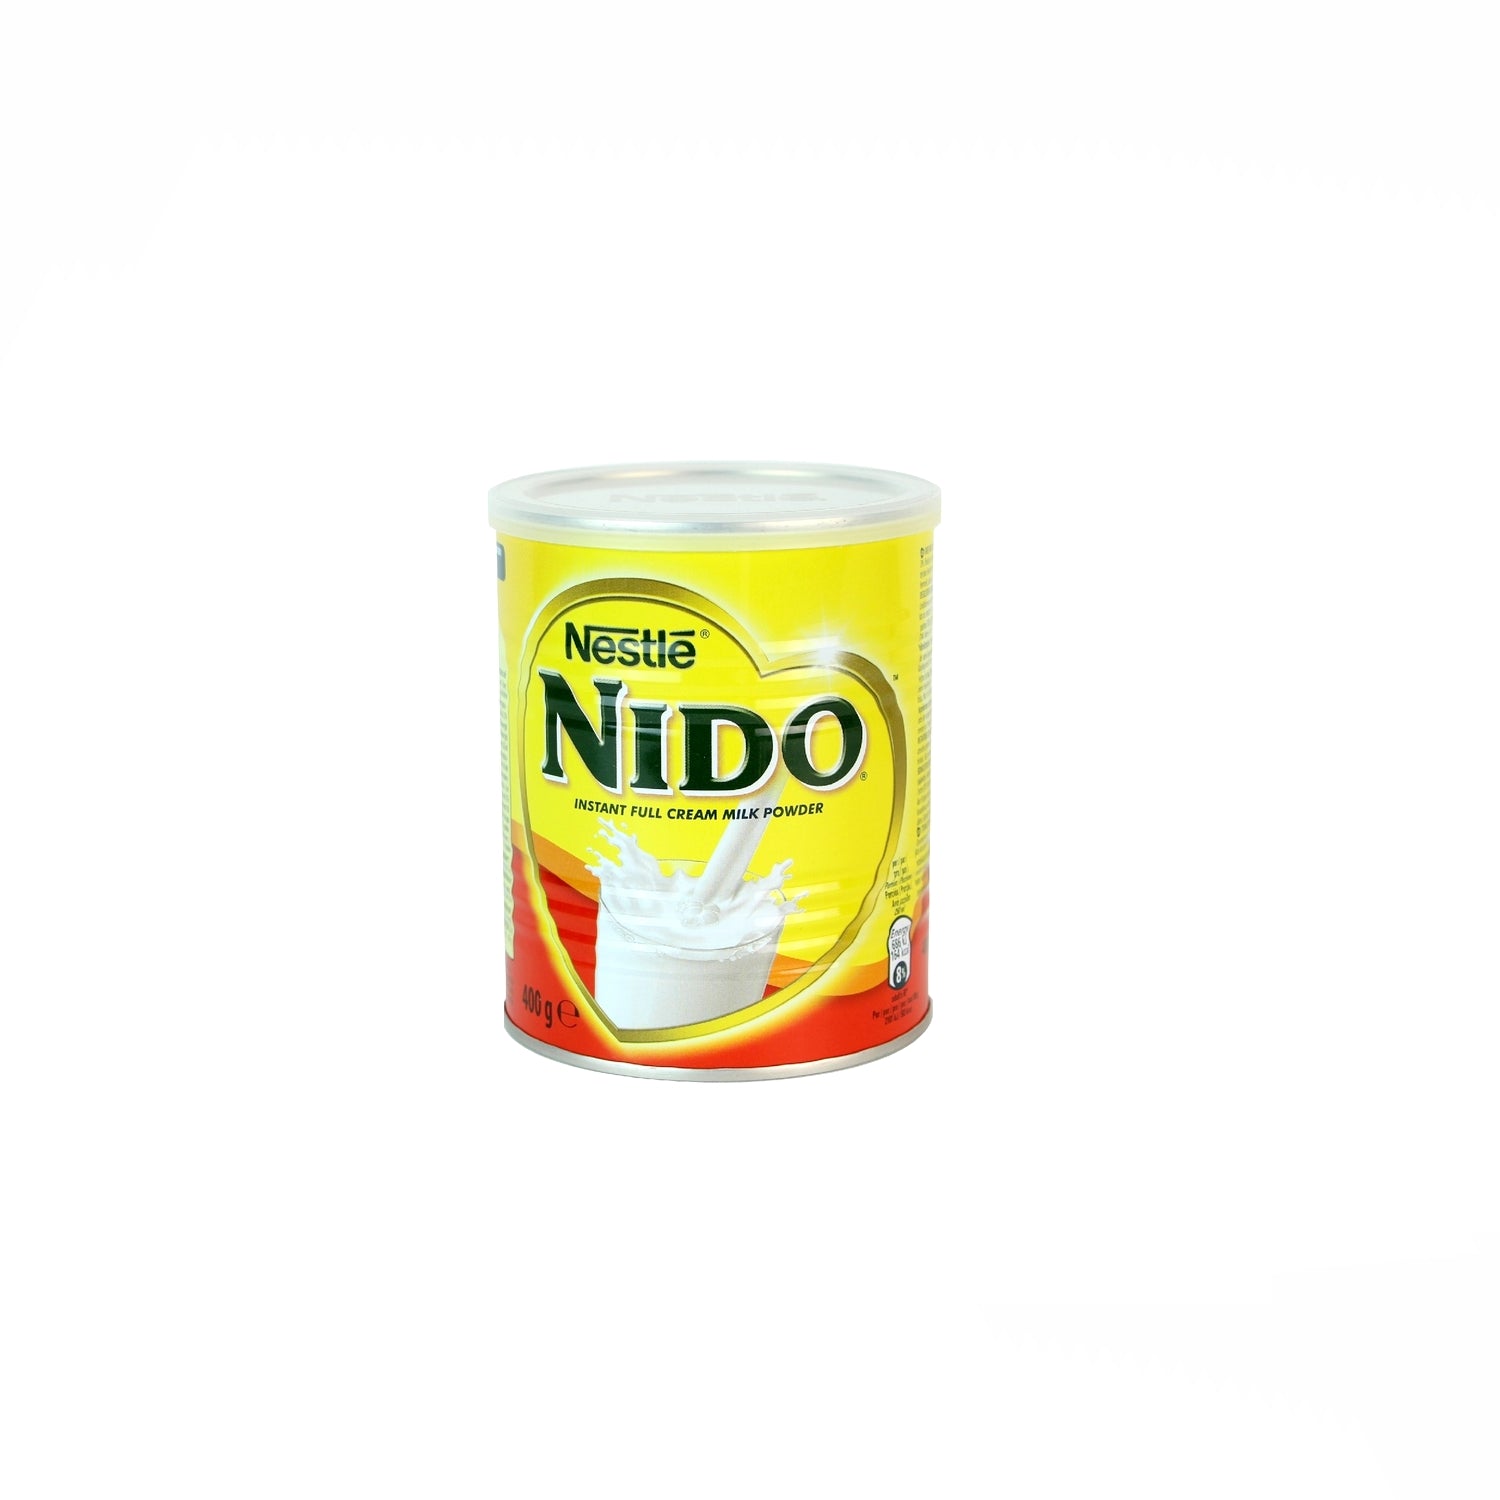 Lait en poudre NIDO 400g